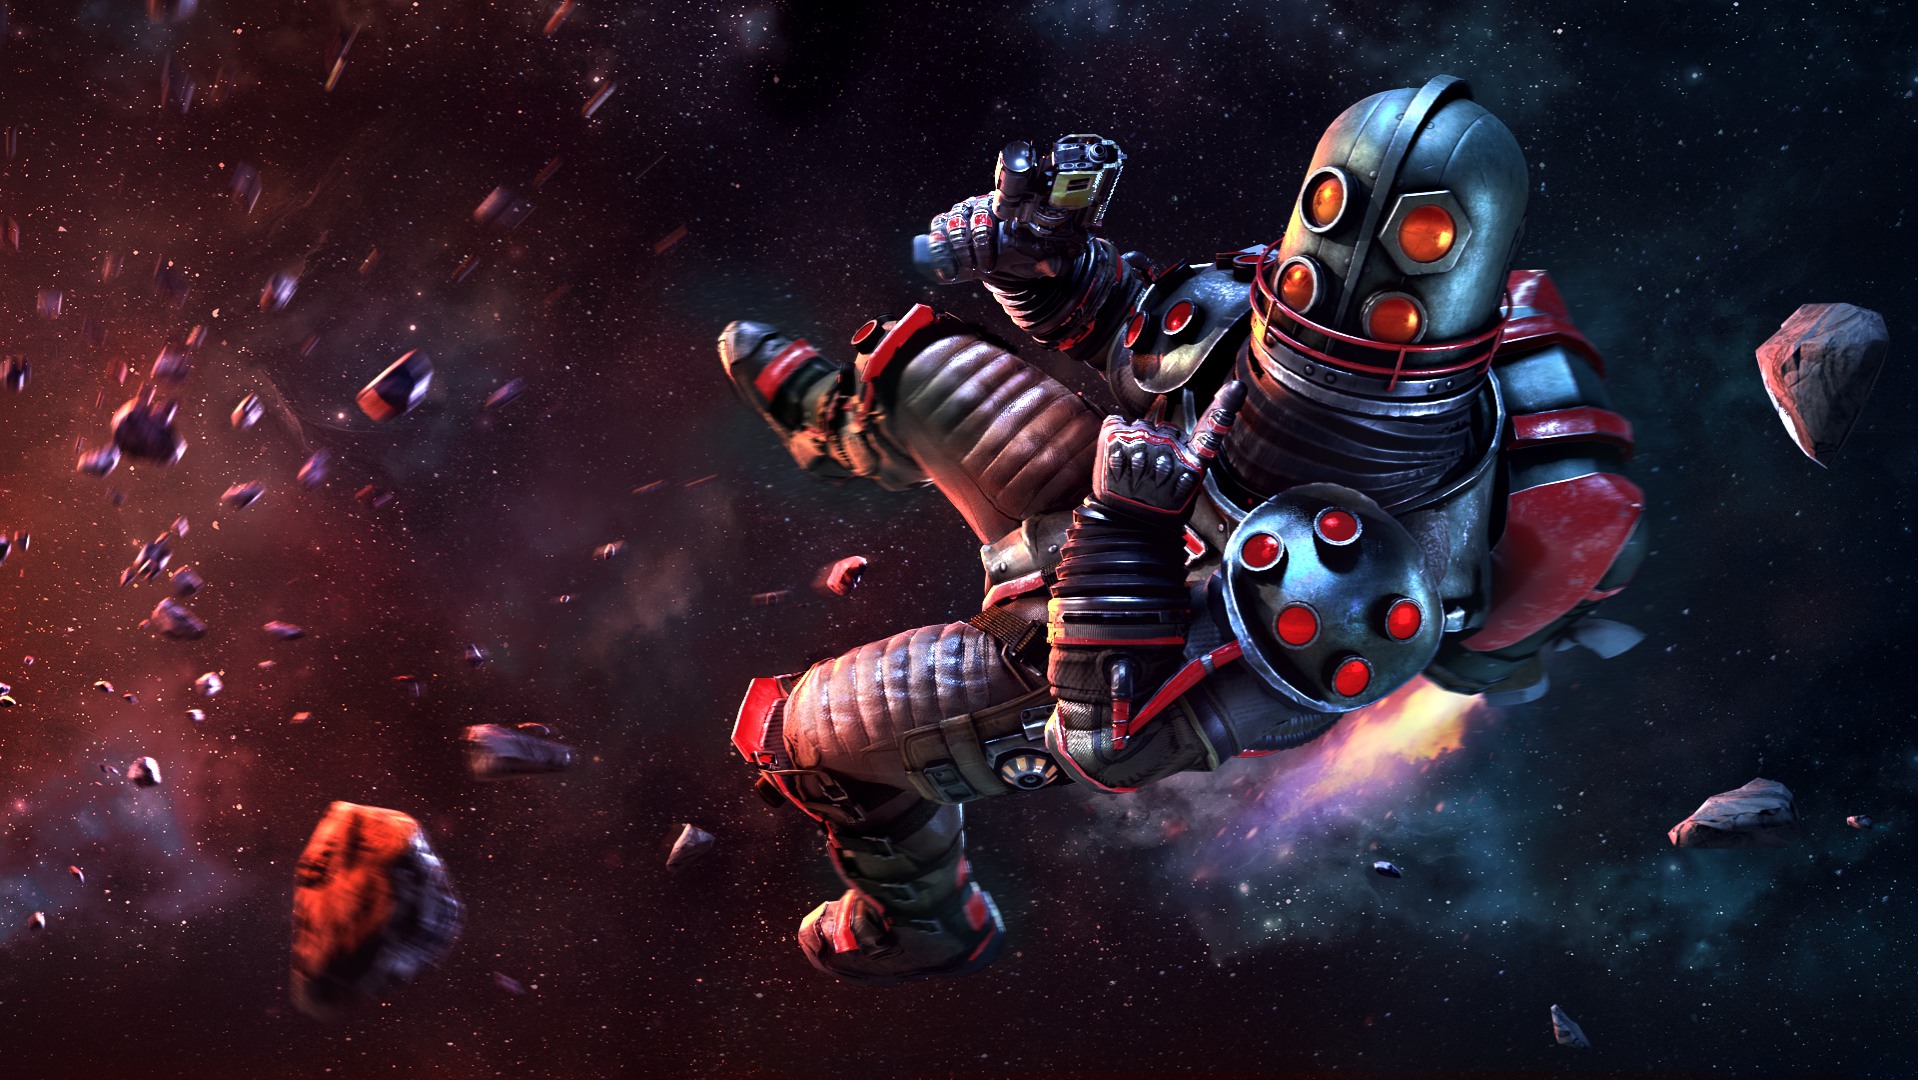 育碧微重力射击游戏《太空镖客》3月26日发售